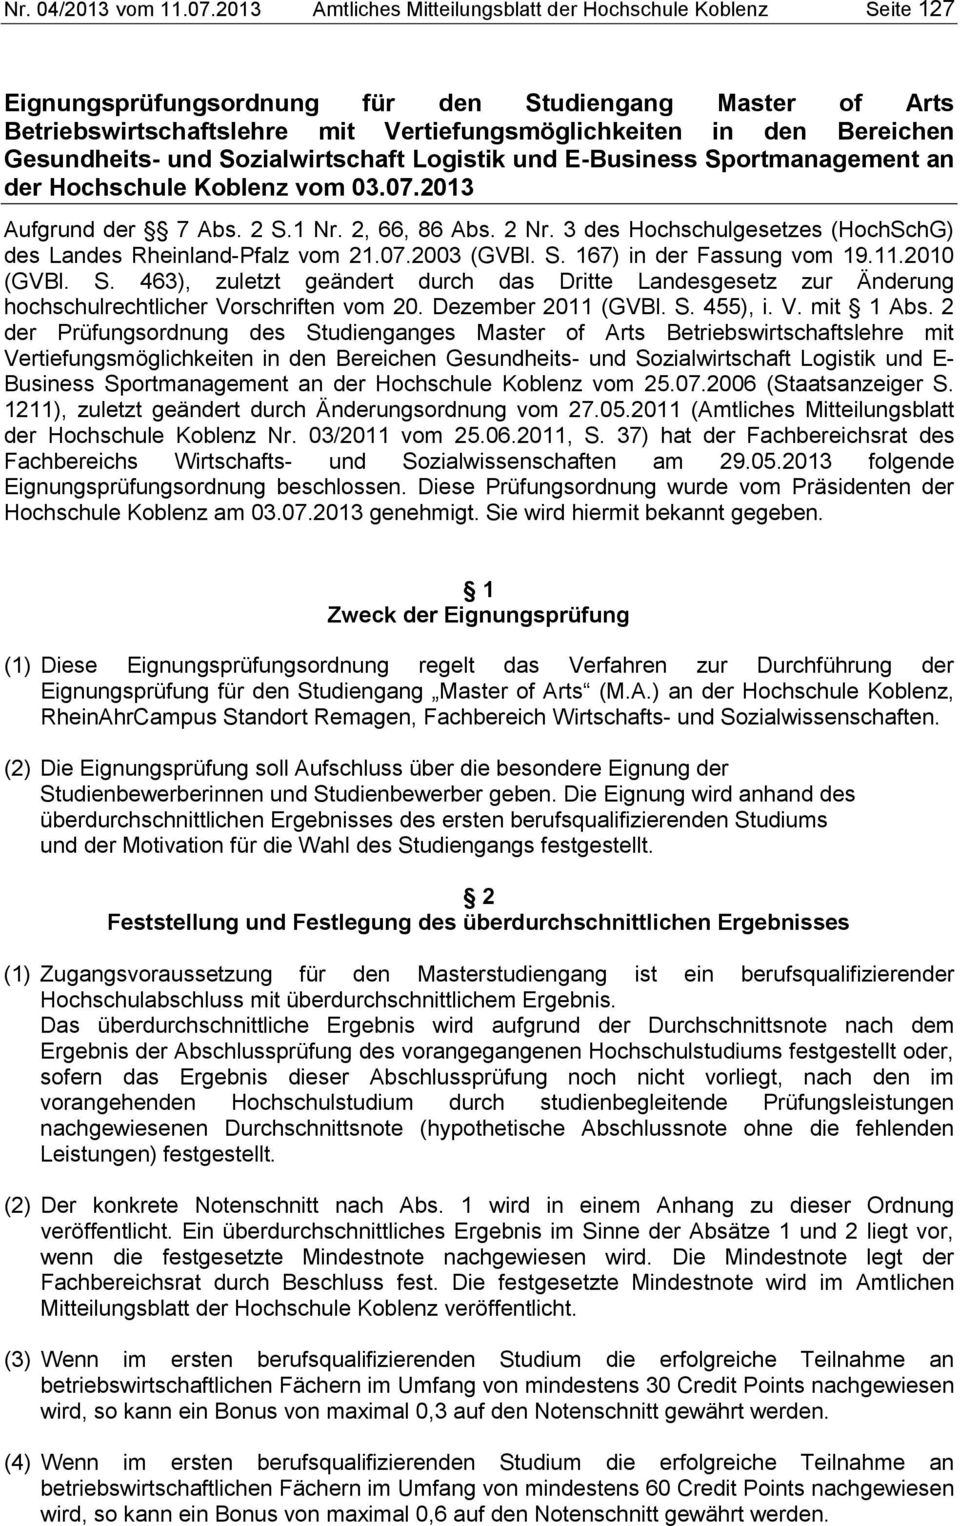 Gesundheits- und Sozialwirtschaft Logistik und E-Business Sportmanagement an der Hochschule Koblenz vom 03.07.2013 Aufgrund der 7 Abs. 2 S.1 Nr. 2, 66, 86 Abs. 2 Nr.